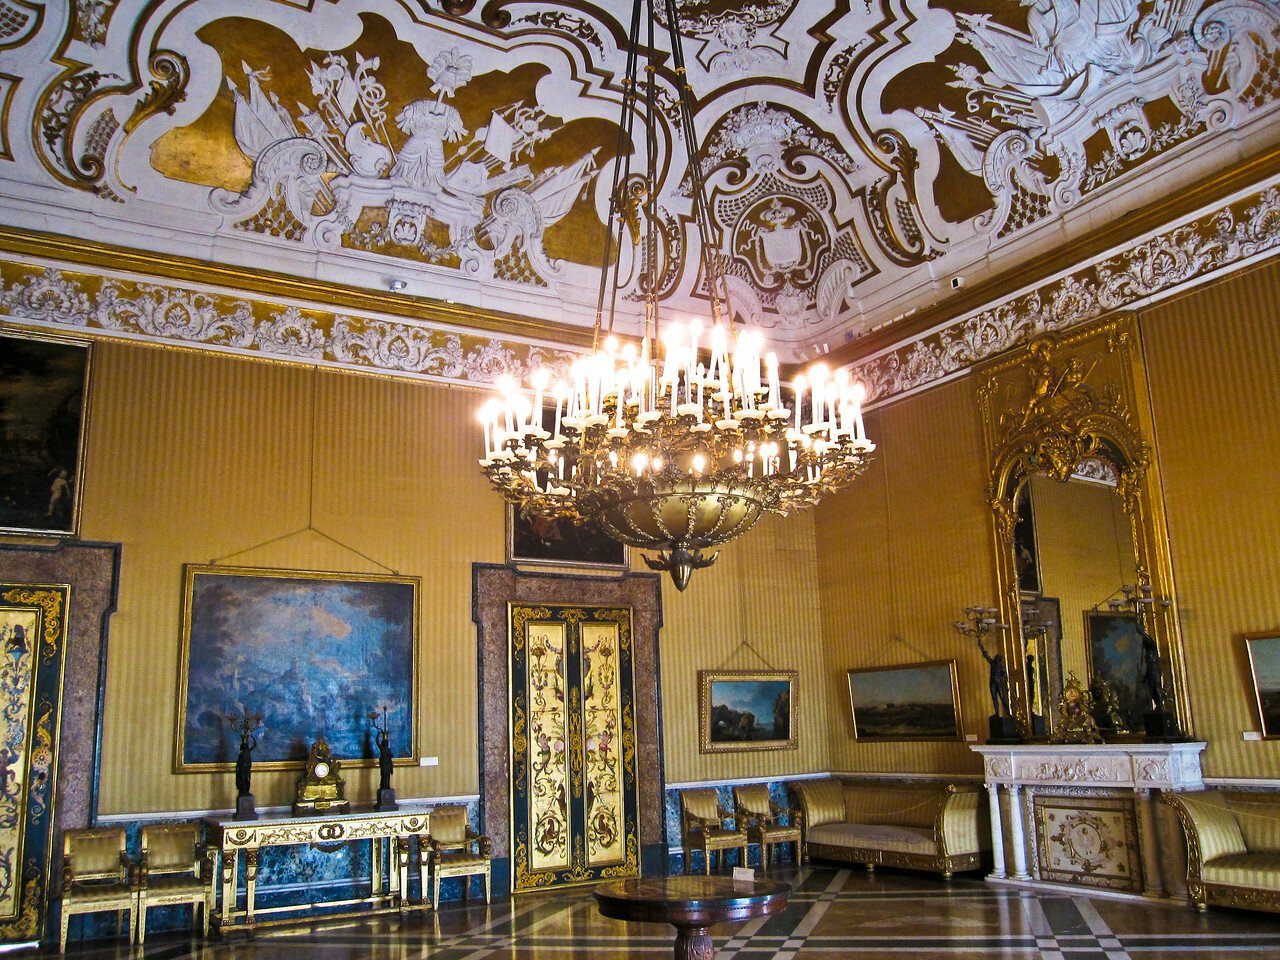 Дворец палаццо реале в Неаполе. Неаполь. Королевский дворец Клодт. Королевский дворец в Неаполе Турин. Турин, Королевский дворец внутри.